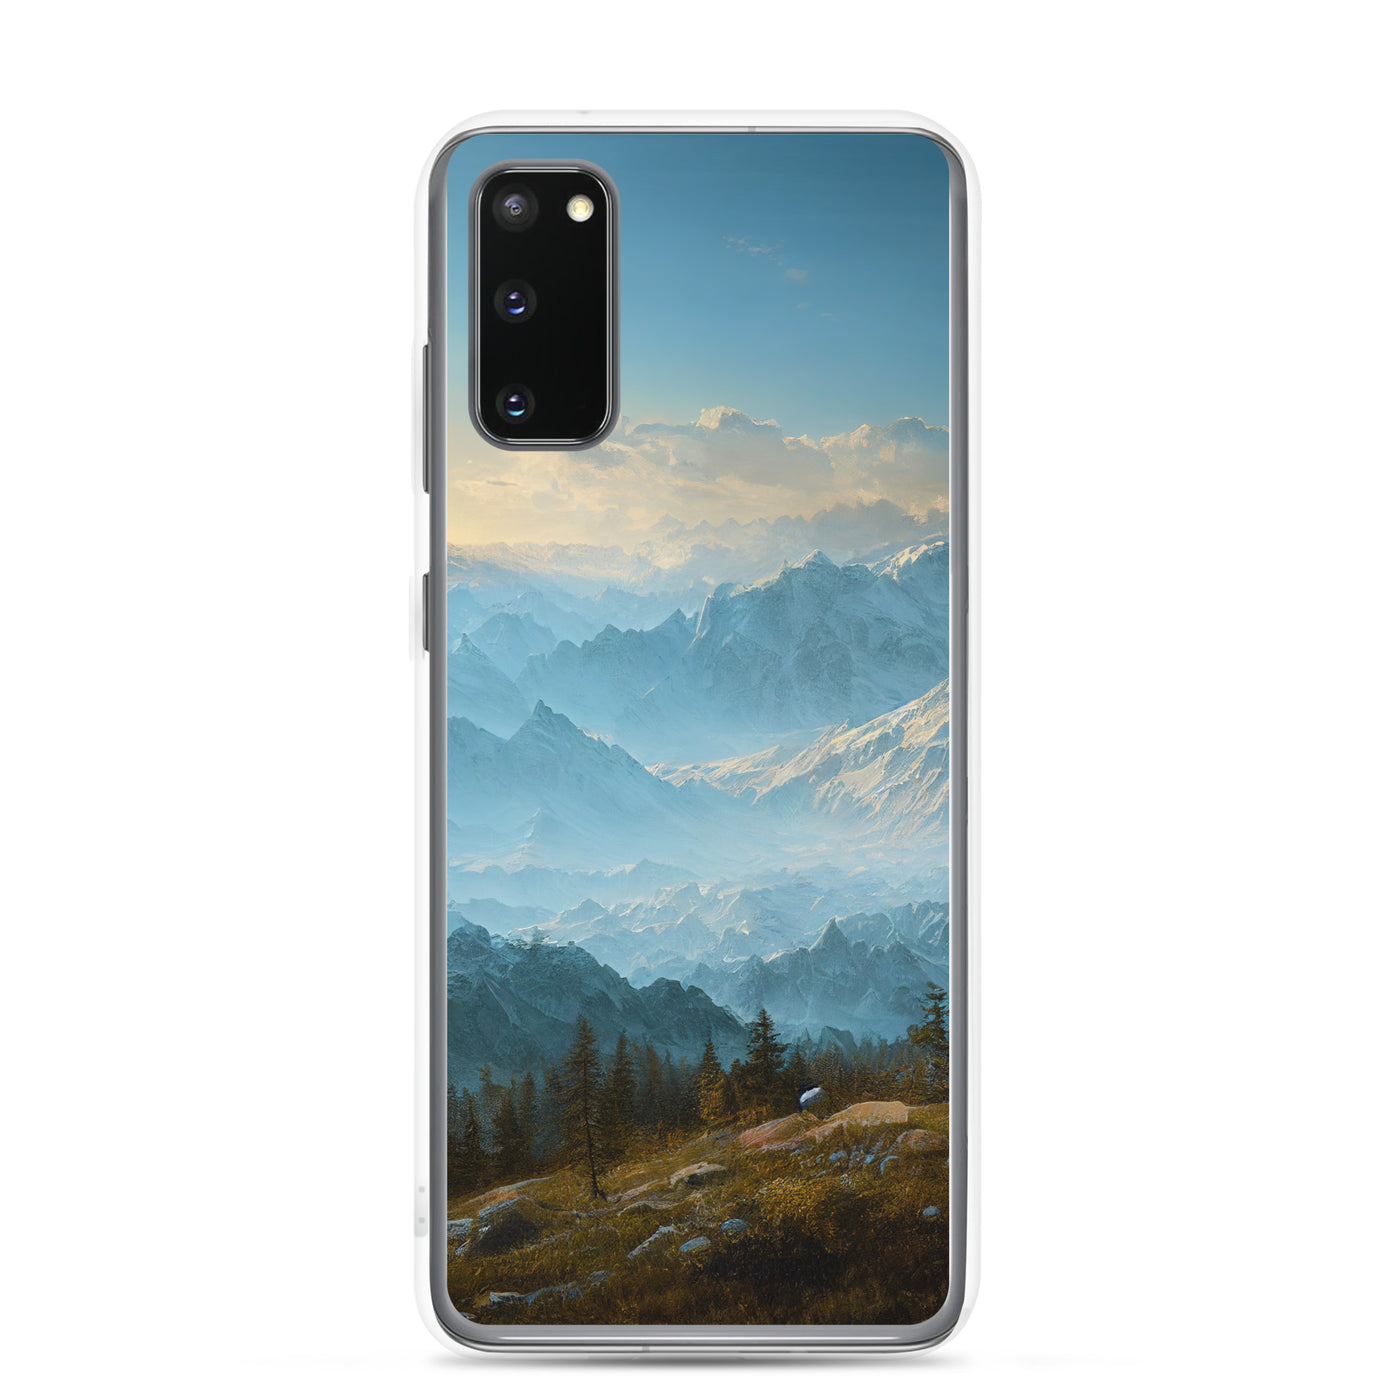 Schöne Berge mit Nebel bedeckt - Ölmalerei - Samsung Schutzhülle (durchsichtig) berge xxx Samsung Galaxy S20